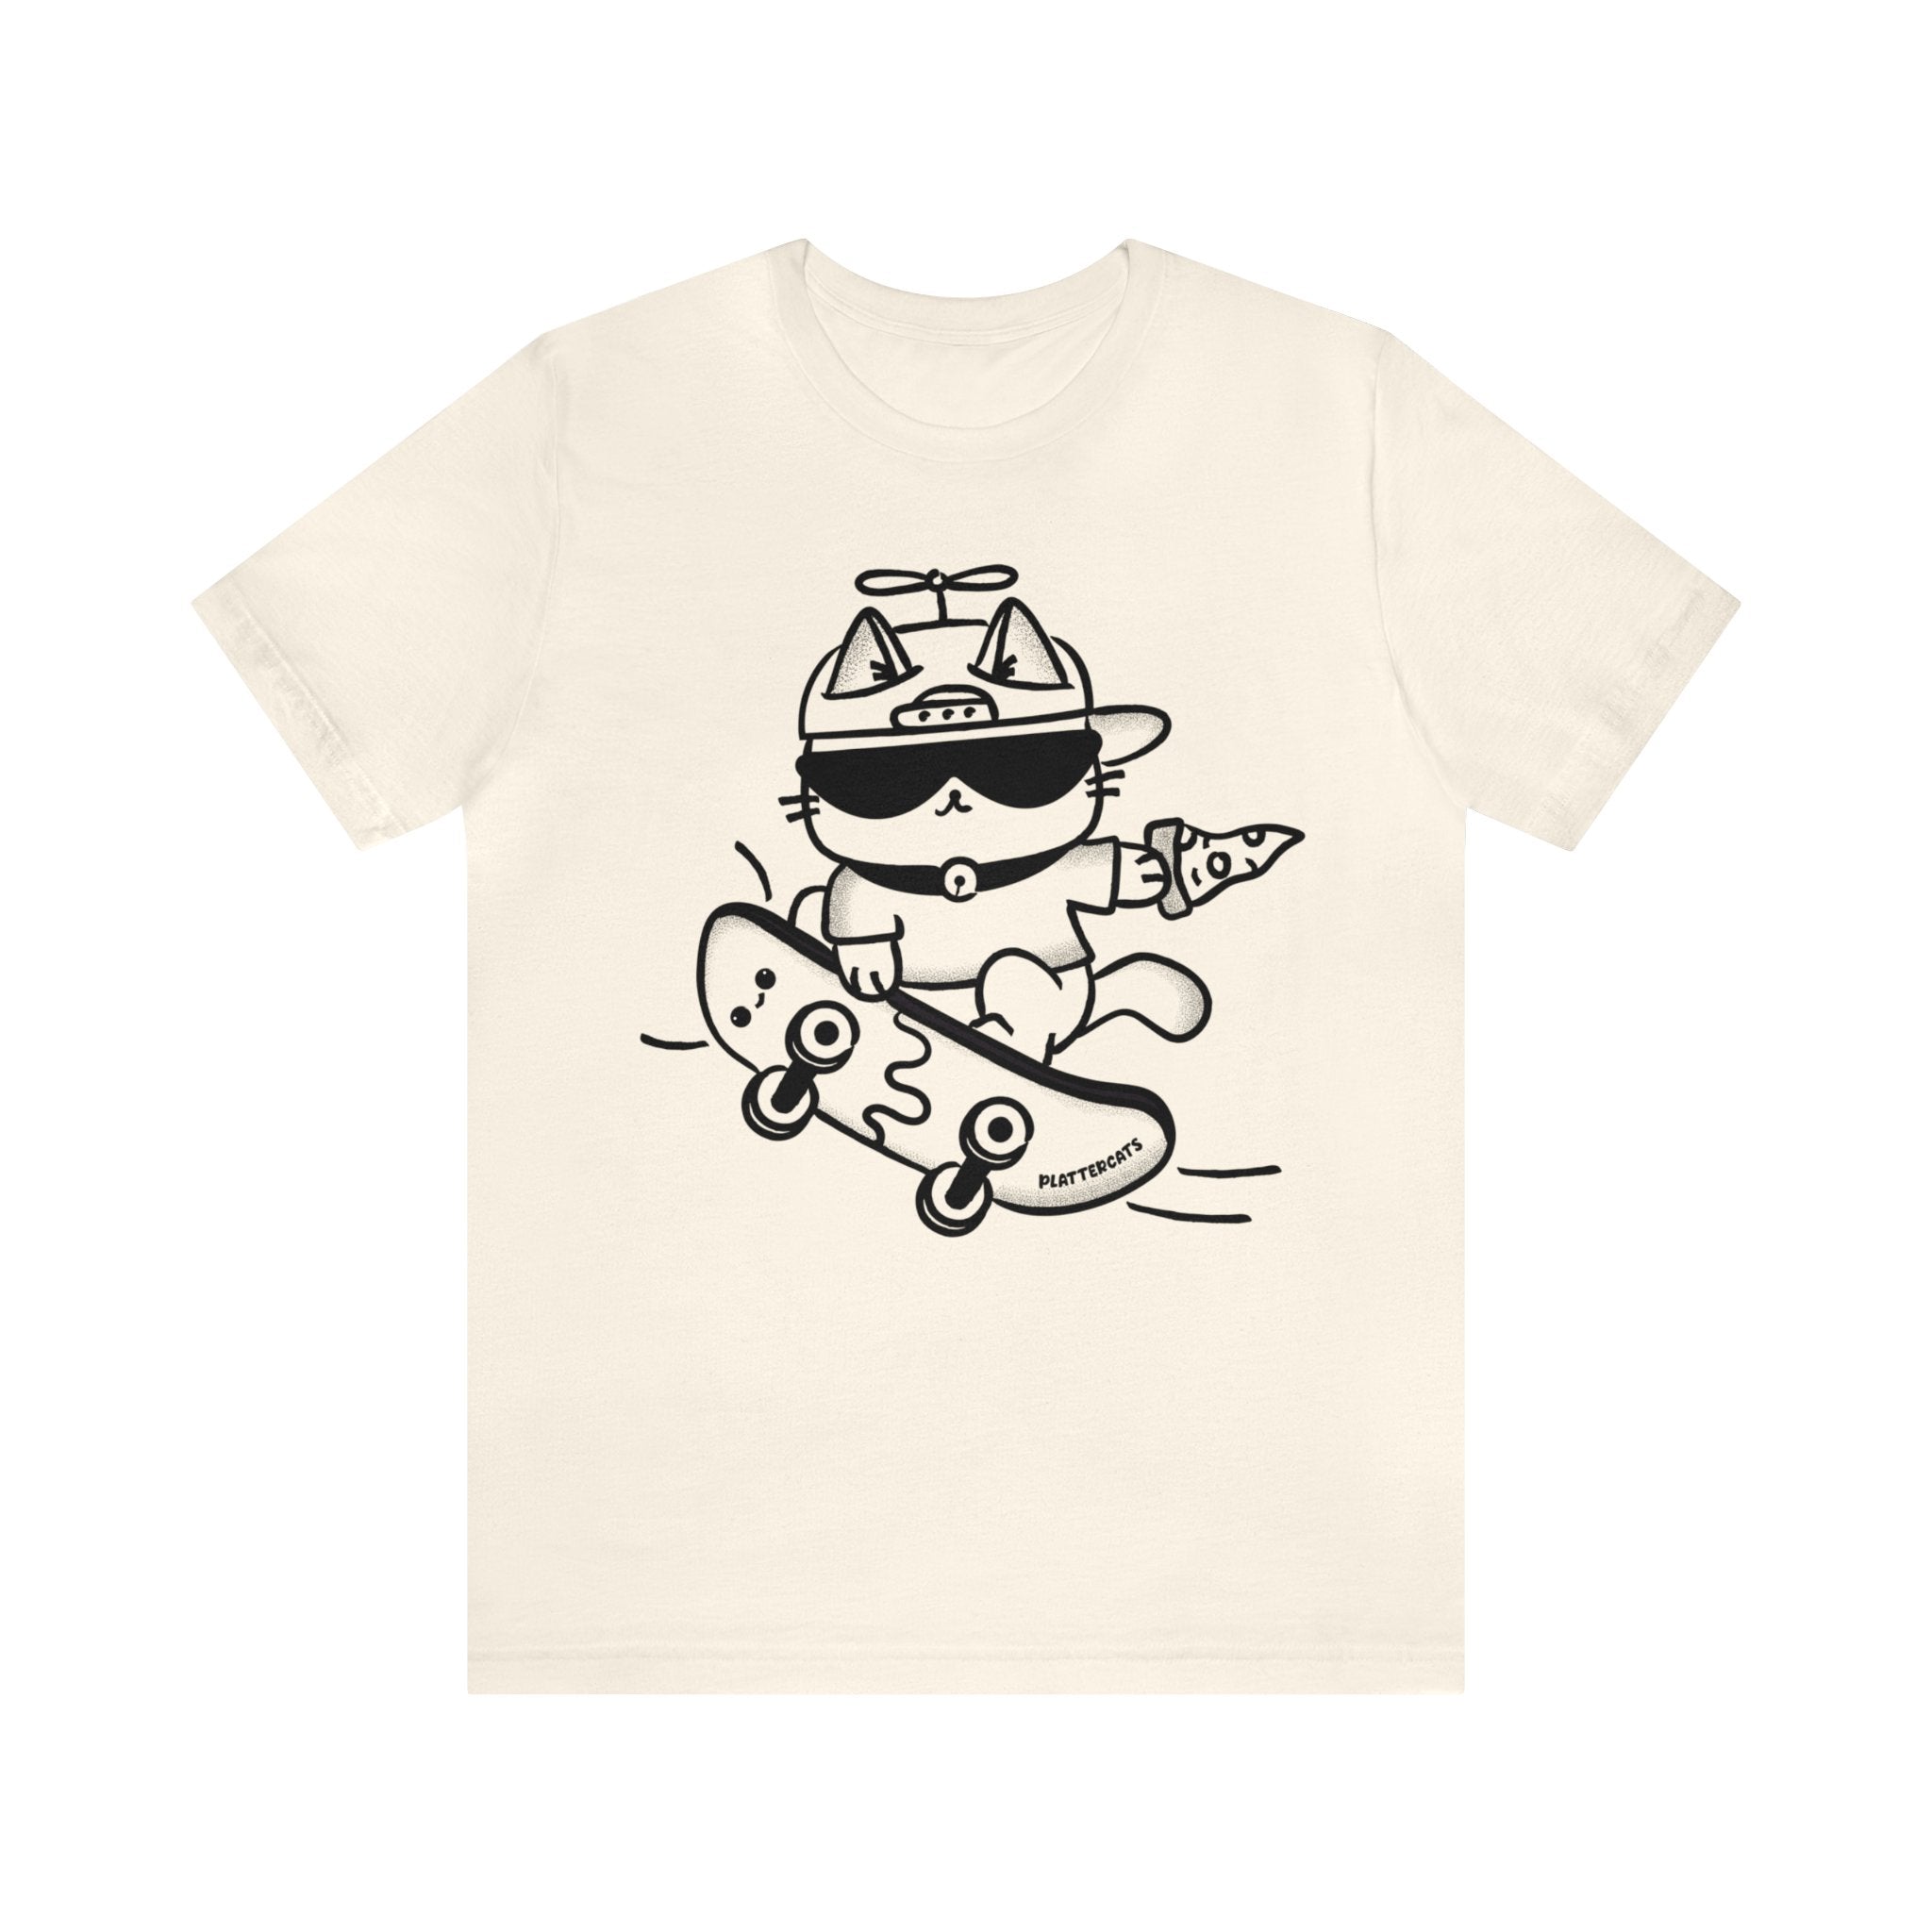 Skateboarding Pizza Cat - Cute Cat Shirt - PlatterCats Creative